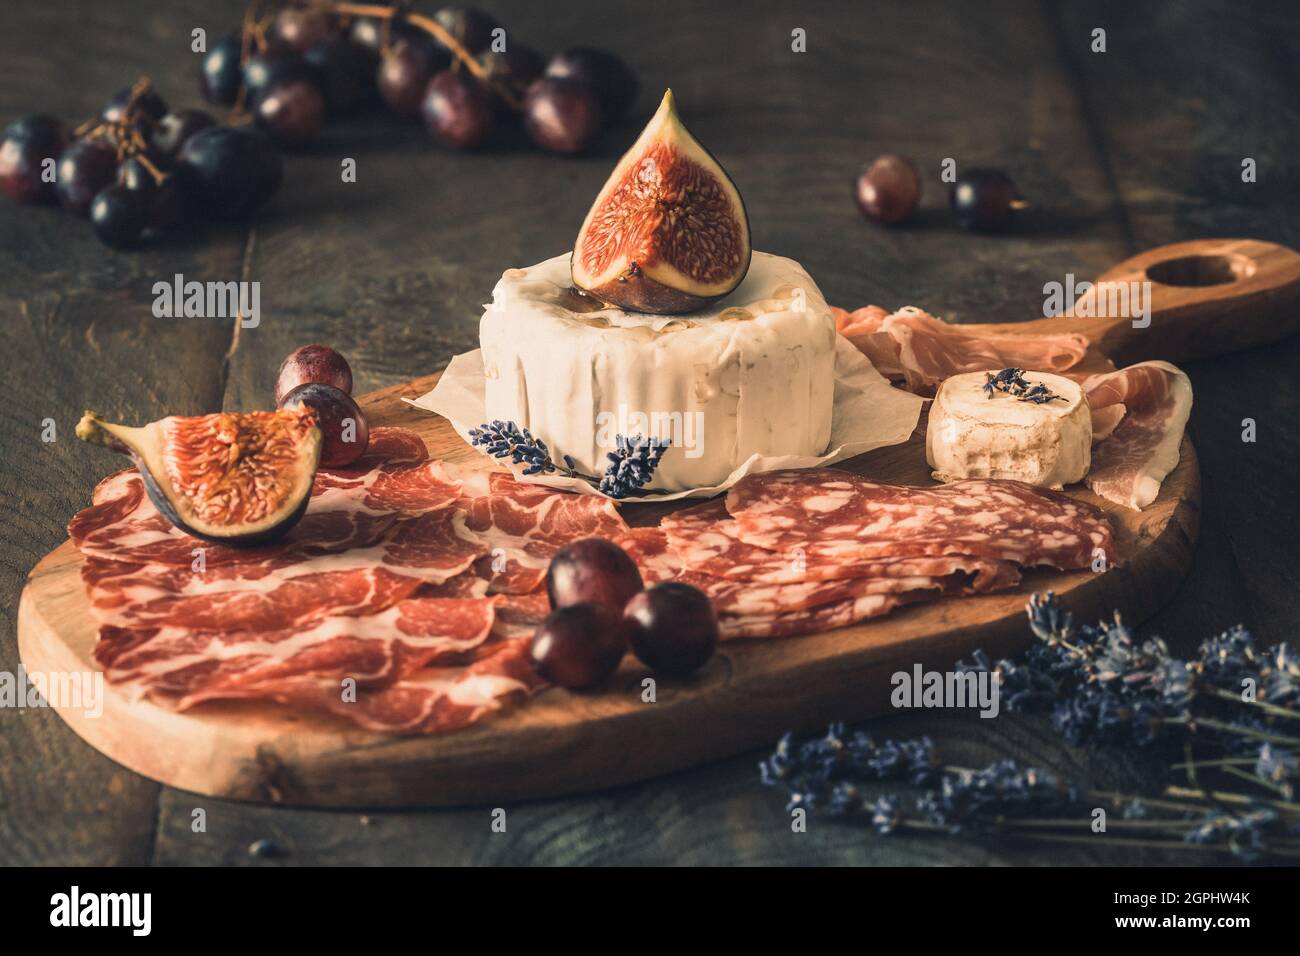 Verschiedene geräucherte Wurstspezialitäten und ein weicher Käse auf einem Holzbrett, verziert mit Feigen und Trauben Stockfoto